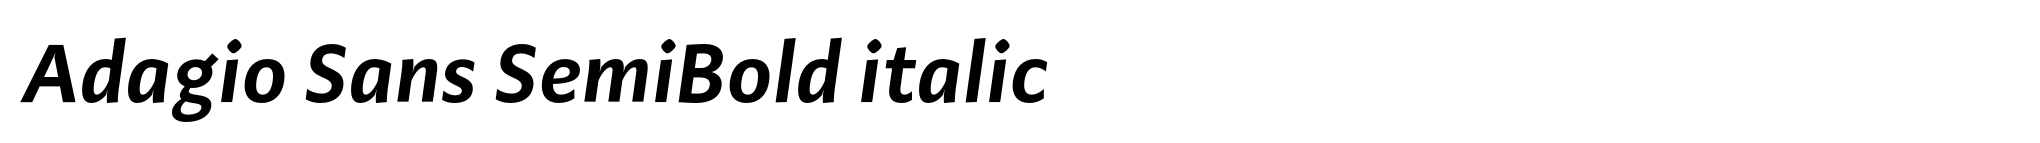 Adagio Sans SemiBold italic image